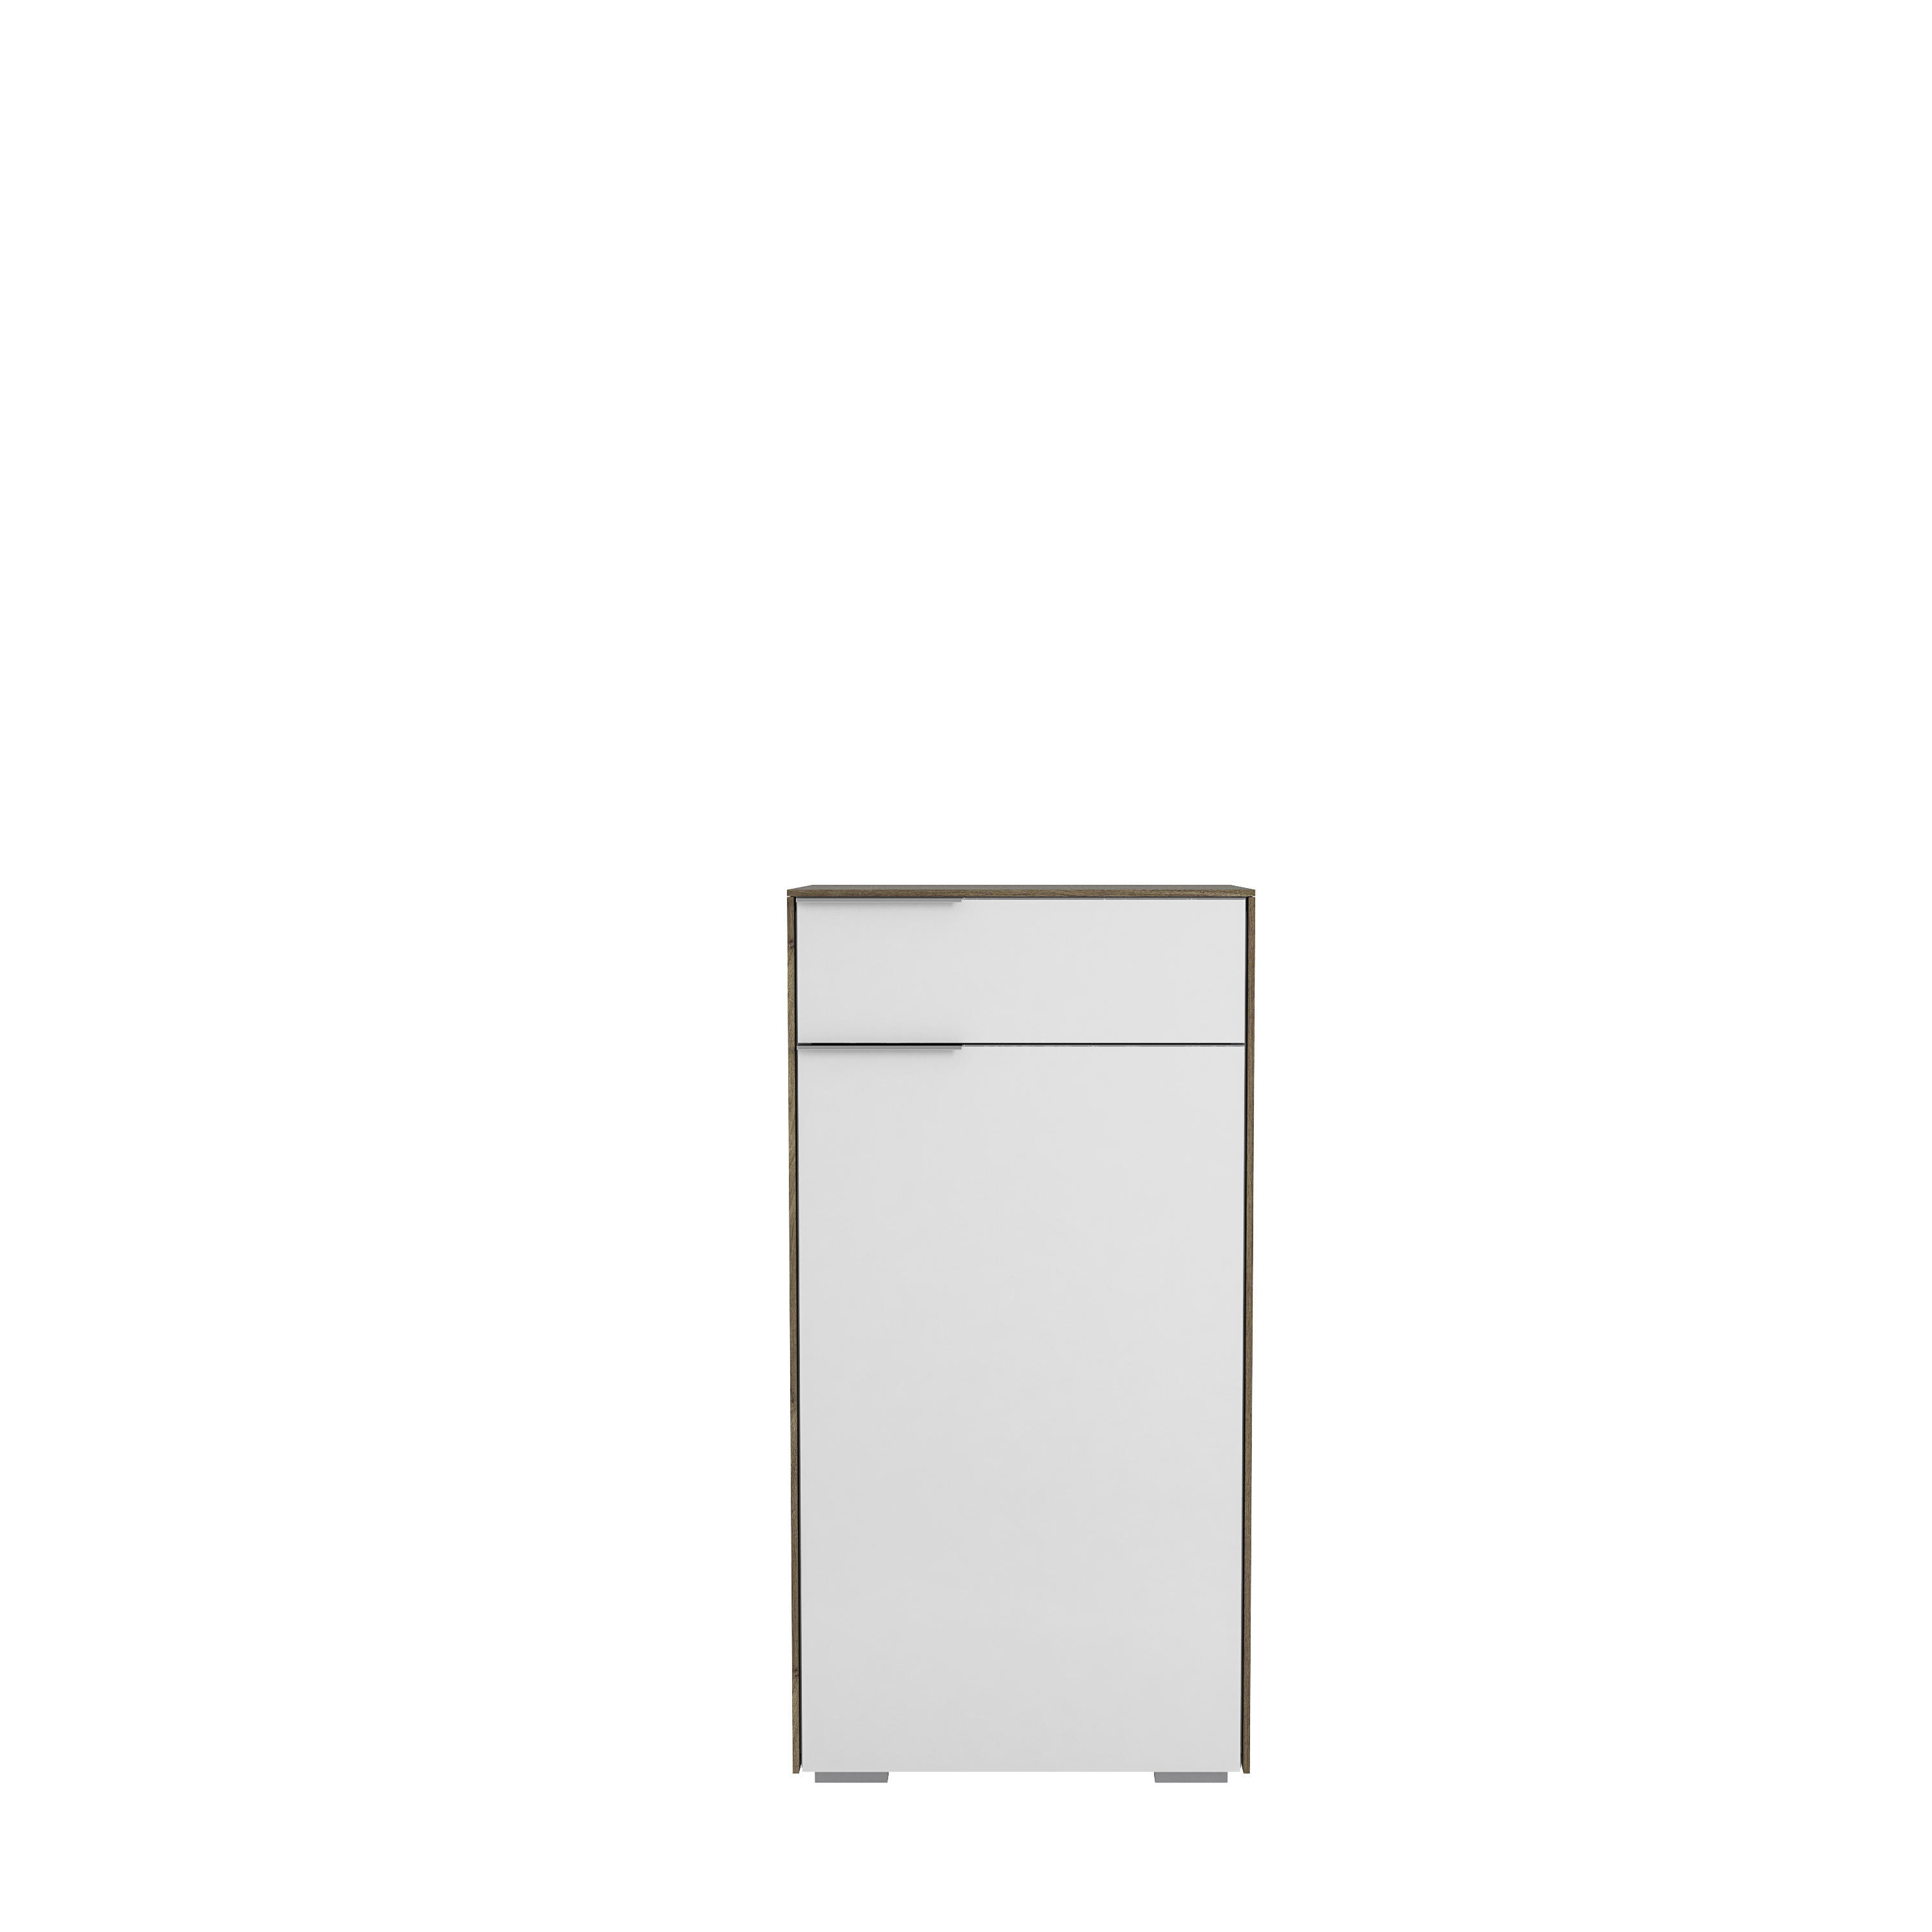 SCHUHSCHRANK Weiß, Walnussfarben  - Chromfarben/Walnussfarben, Design, Glas/Holzwerkstoff (55,8/110,2/37,3cm) - Voleo